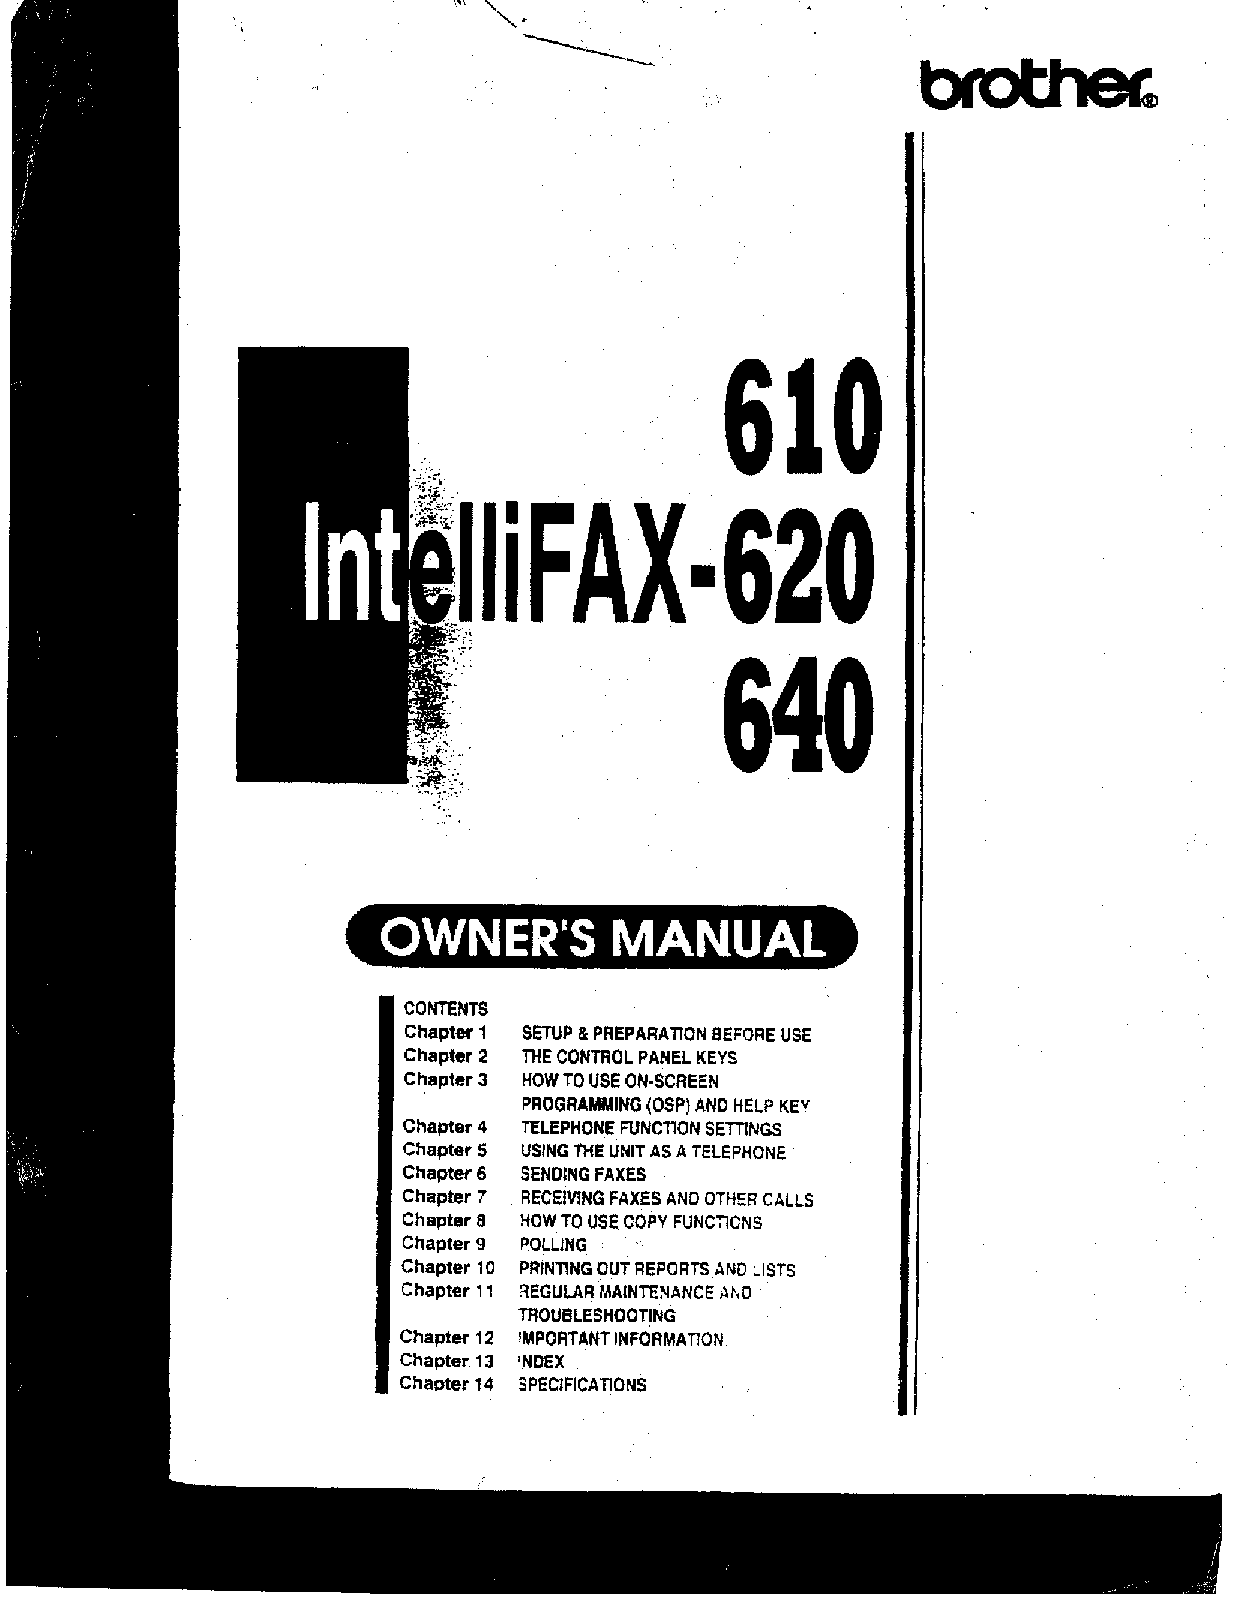 Brother IntelliFAX-610, IntelliFAX-620, IntelliFAX-640 Owner Manual